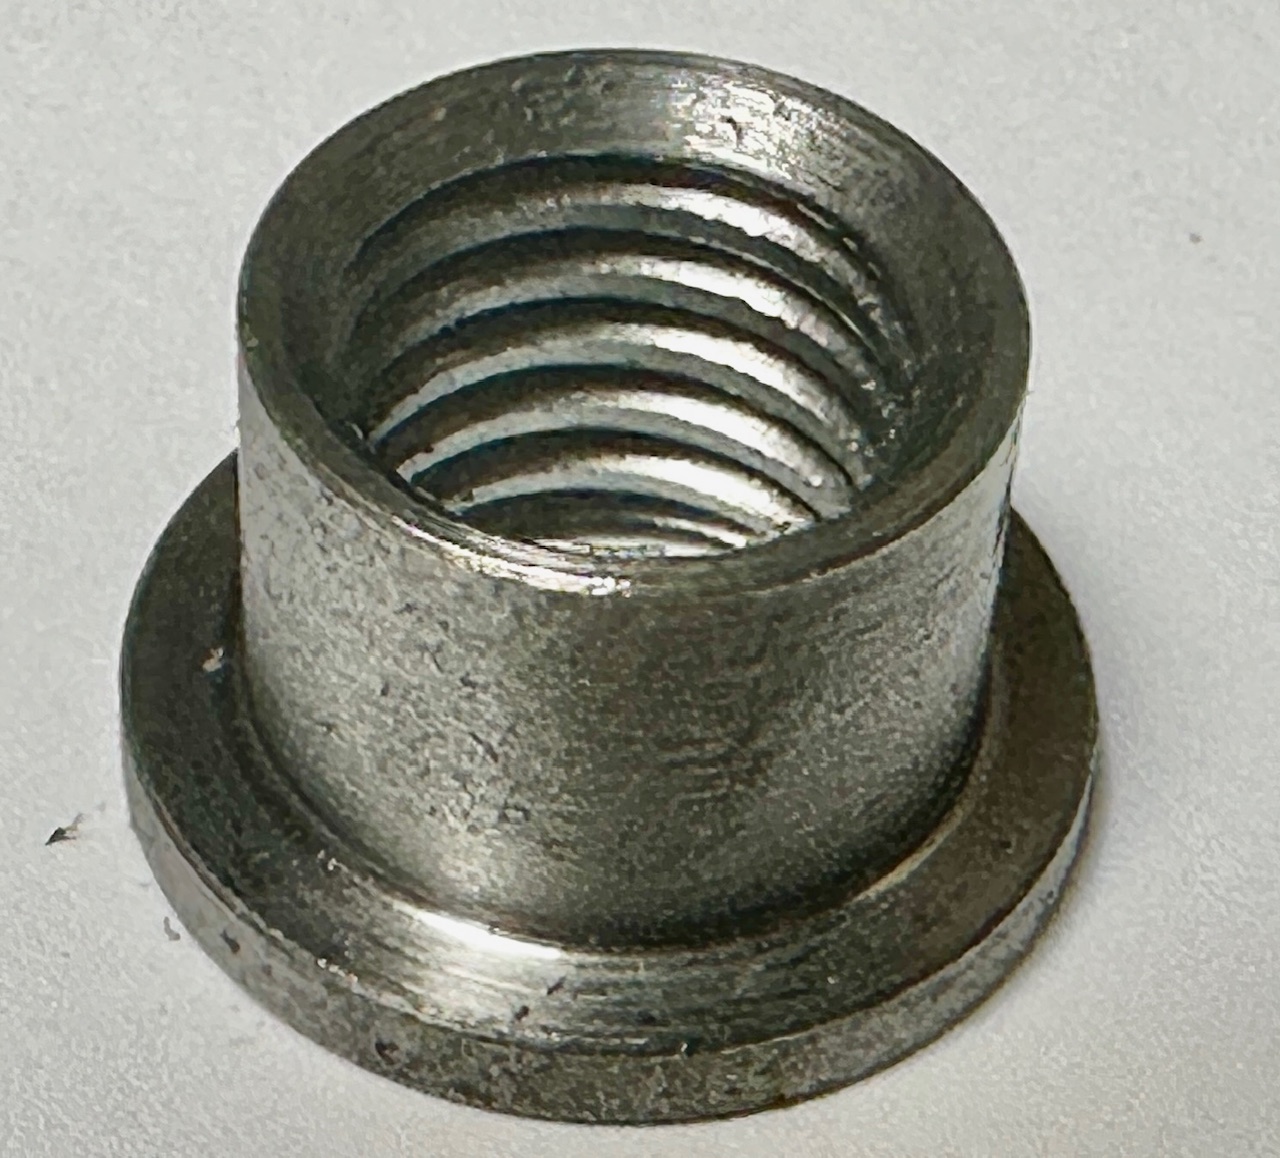 Weld-in thread / welding socket with 2 mm collar M10